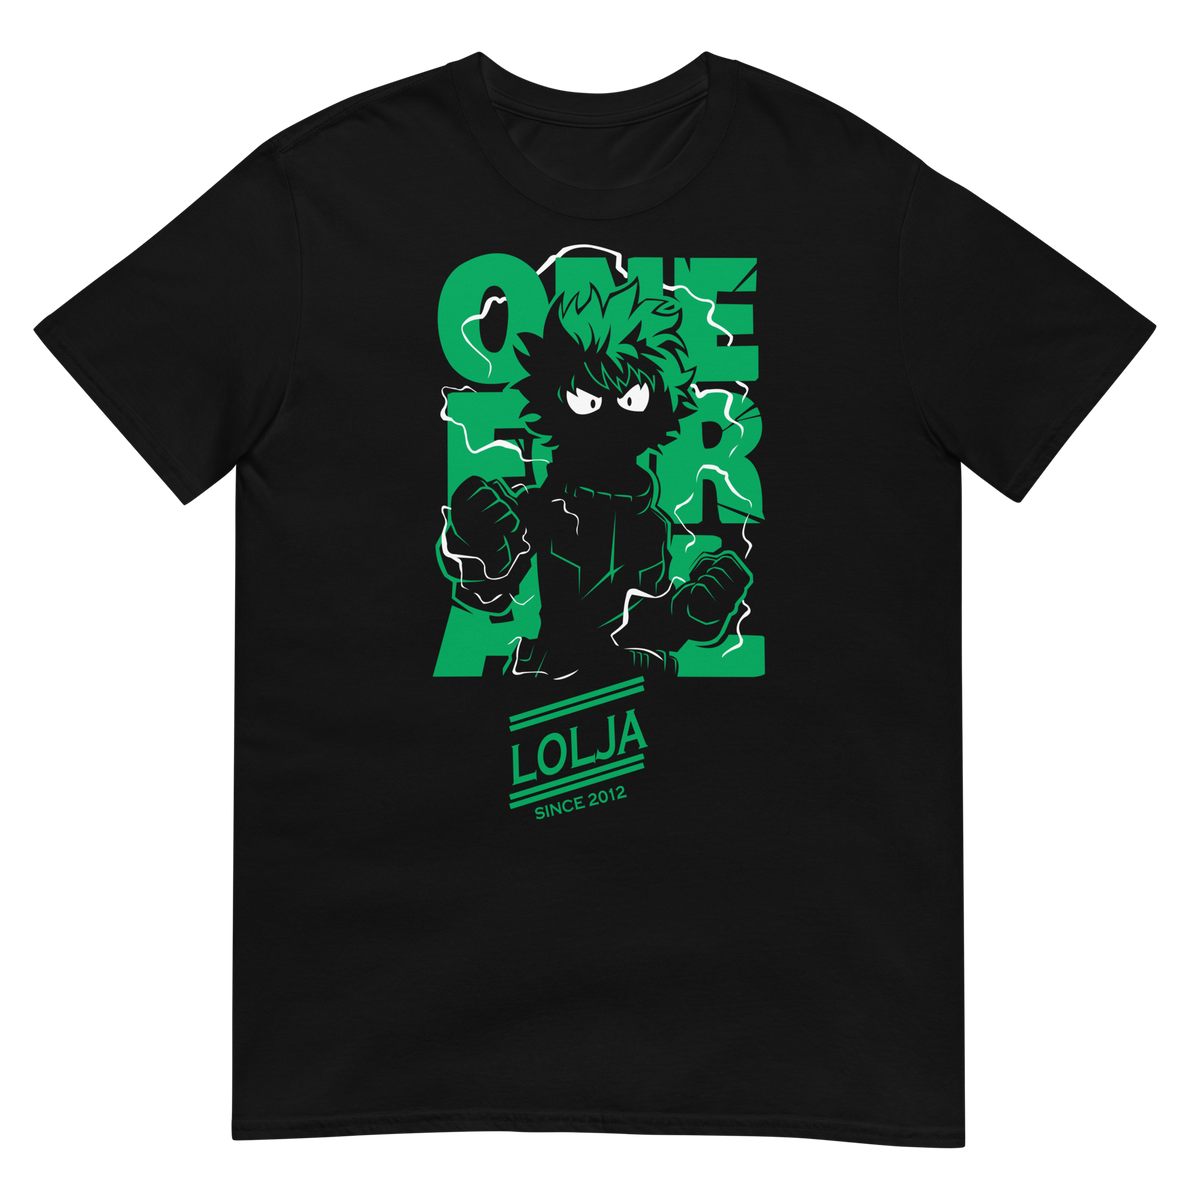 Nome do produto: Camiseta One For All SInce 2012